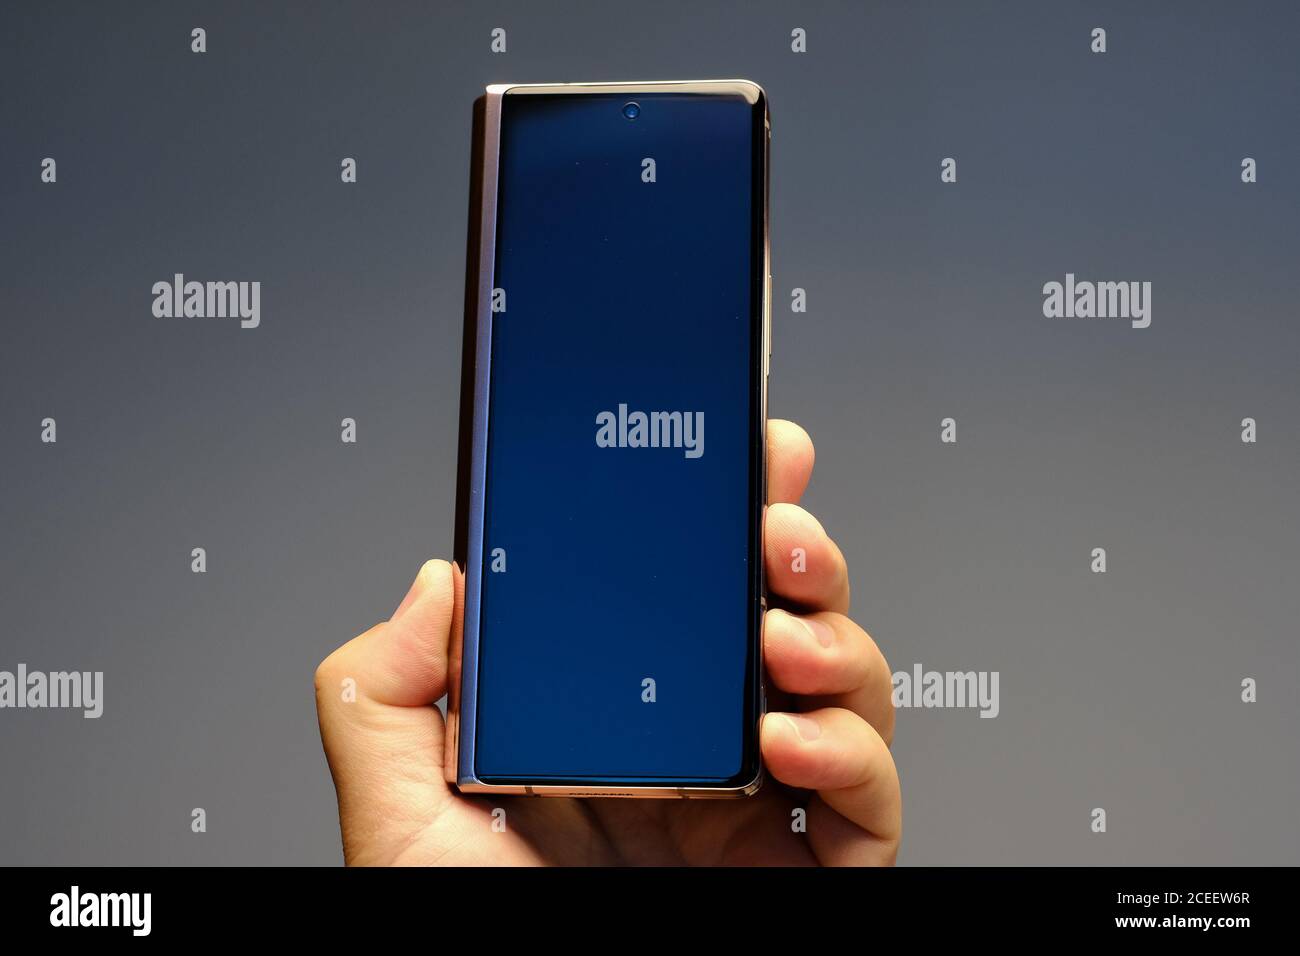 RIGA, SEPTEMBRE 2020 - le nouveau Samsung Galaxy Z Fold2 5G smartphone Android est affiché à des fins éditoriales. Contraste élevé, faible focale ef Banque D'Images